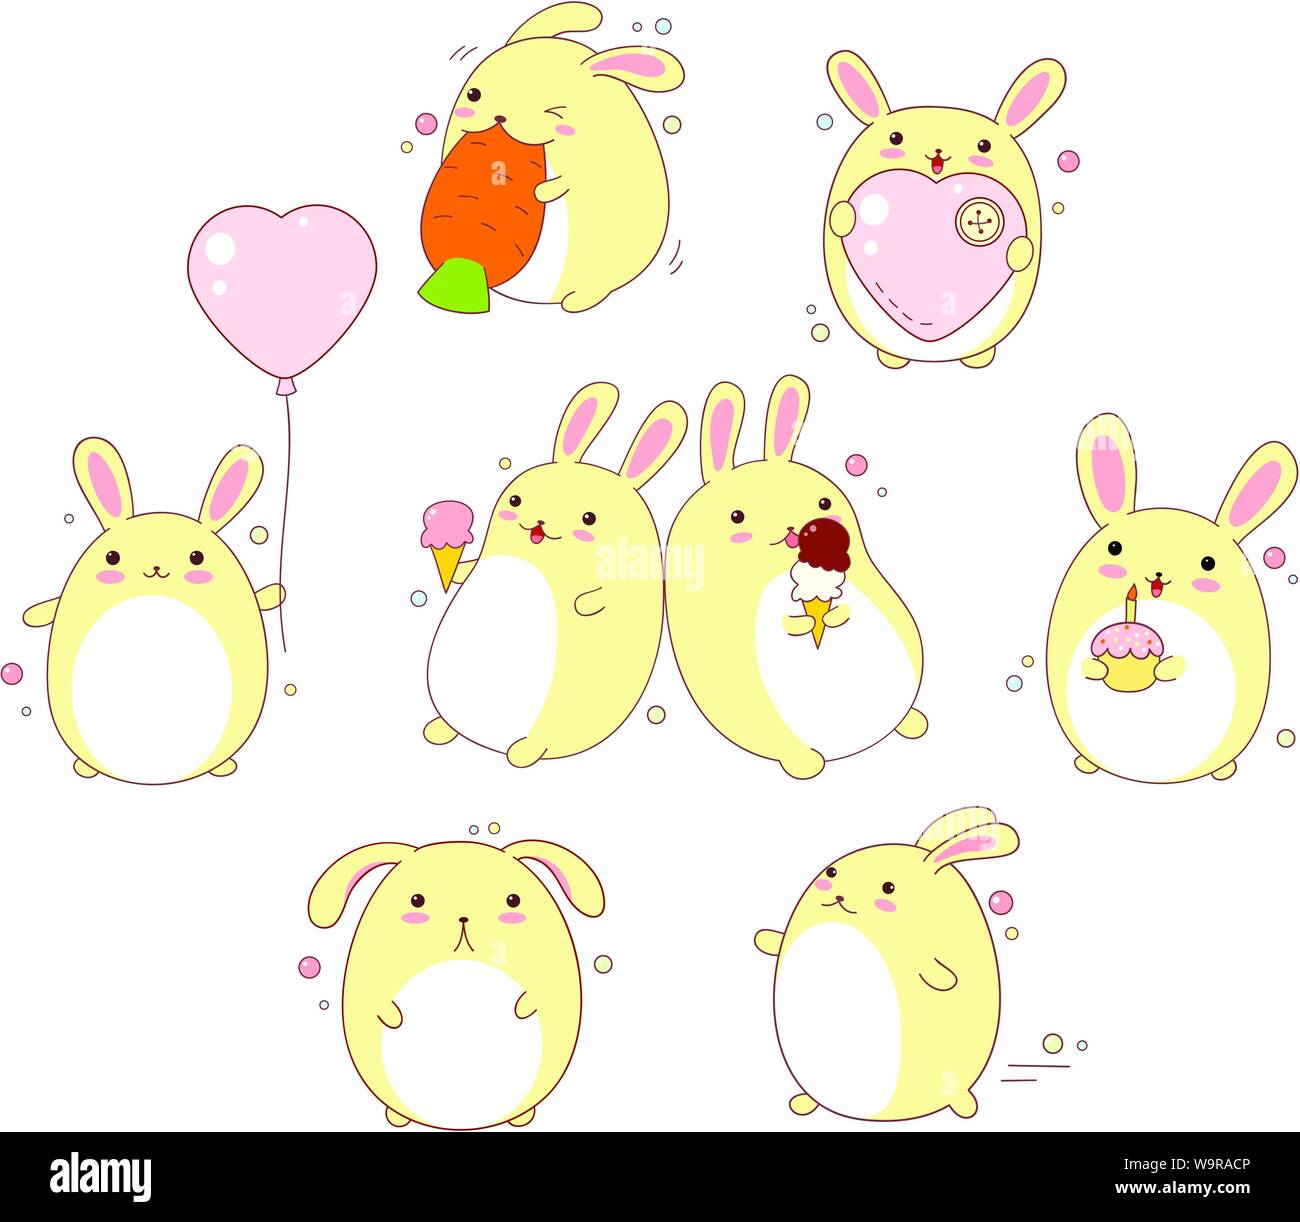 Collection de lapins mignon avec différentes émotions dans le style kawaii Illustration de Vecteur